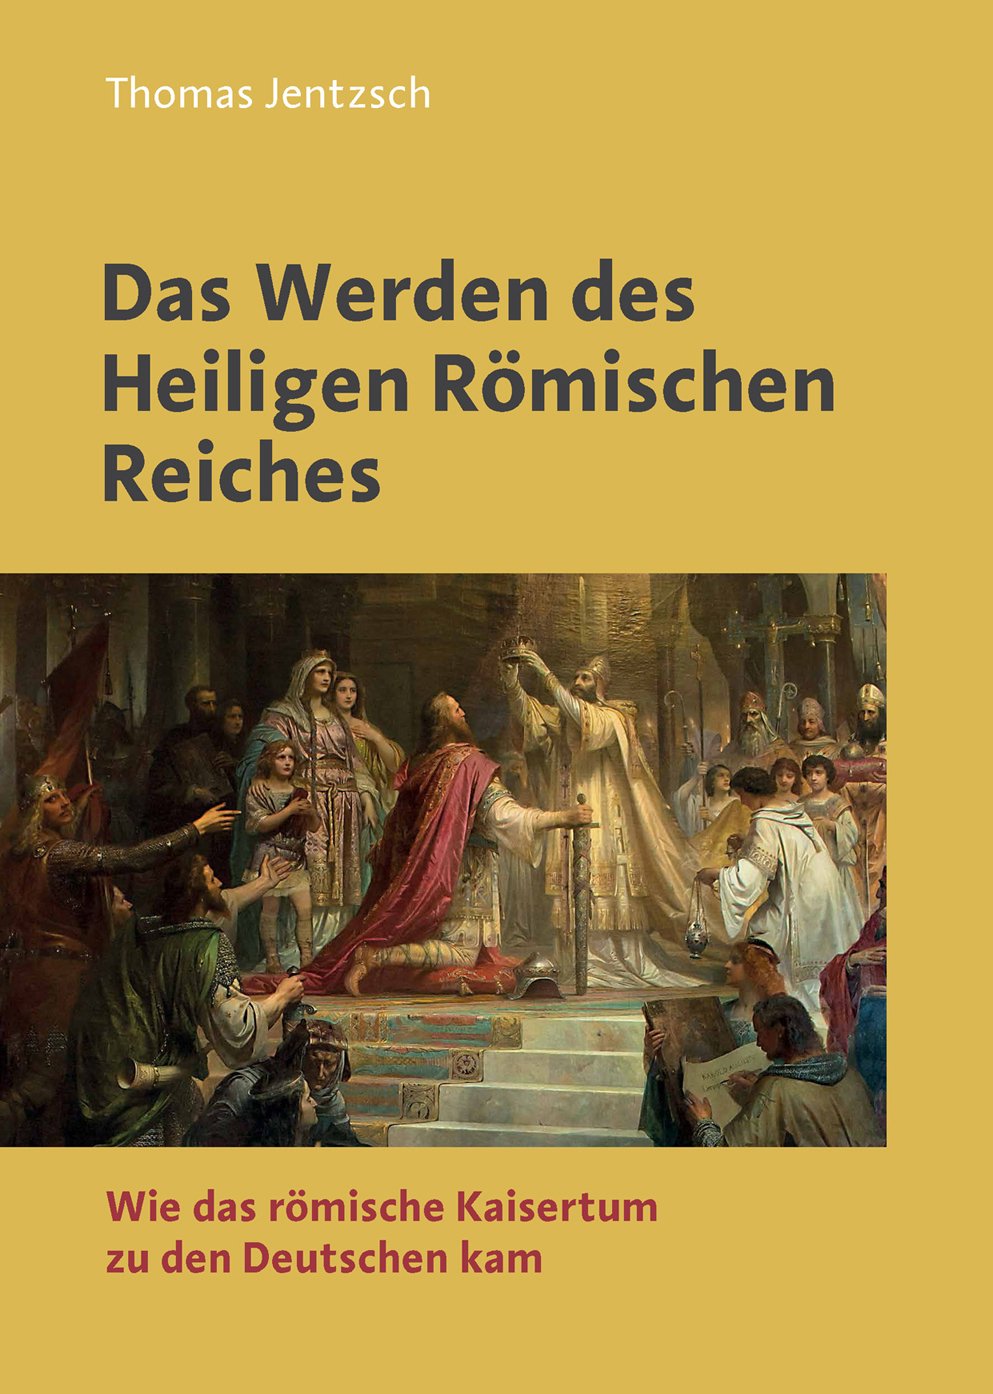 Das Werden des Heiligen Römisches. Wie das römische Kaisertum zu den Deutschen kam.n Reiche